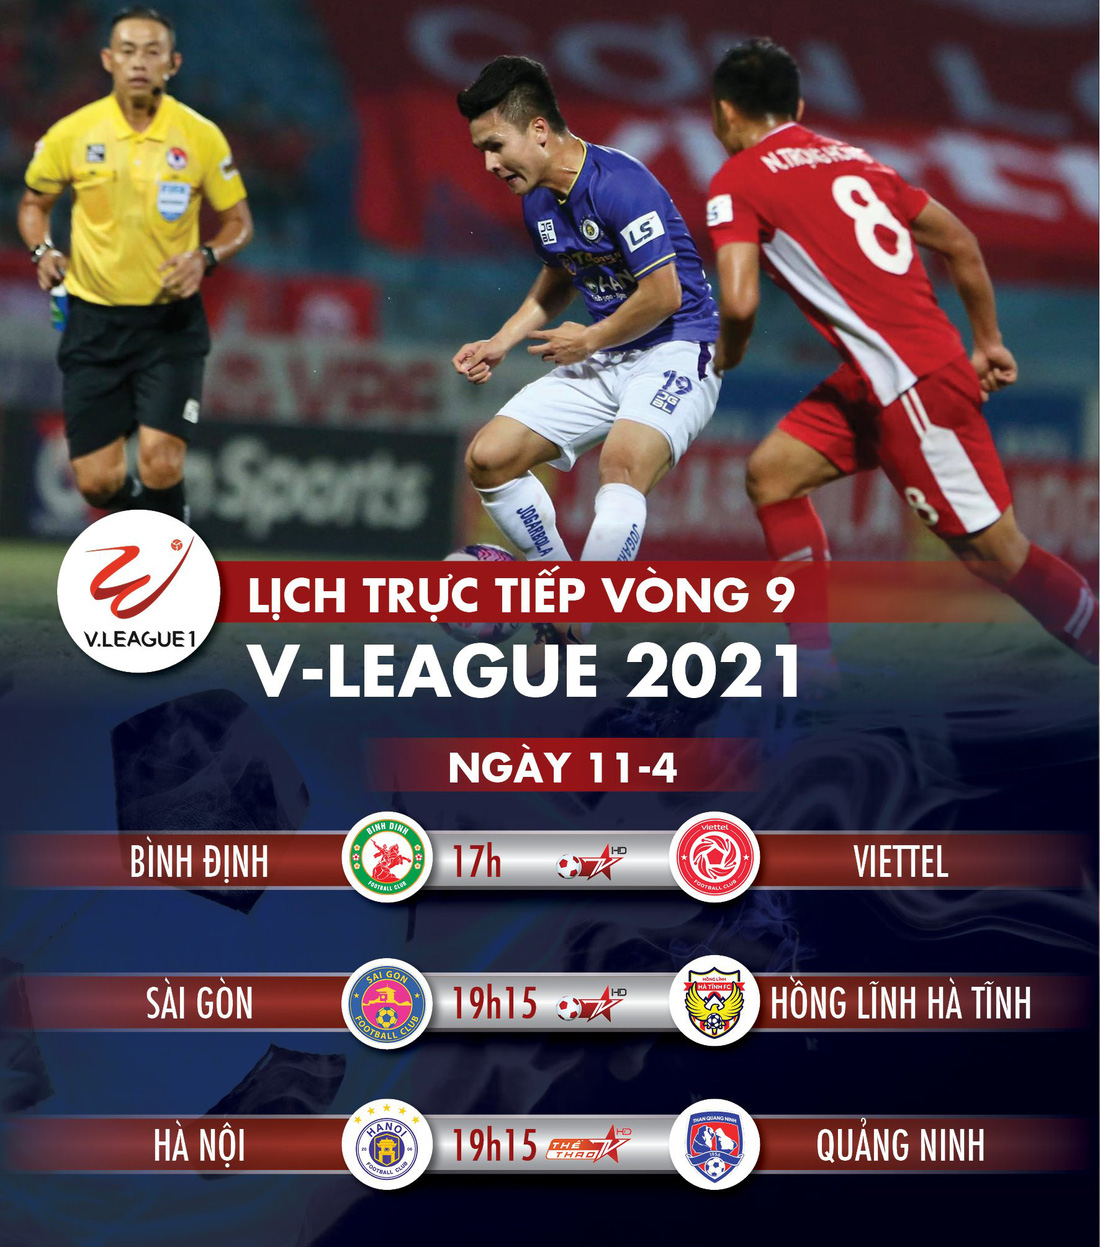 Lịch trực tiếp vòng 9 V-League: Quảng Ninh làm khách đến sân Hà Nội - Ảnh 1.